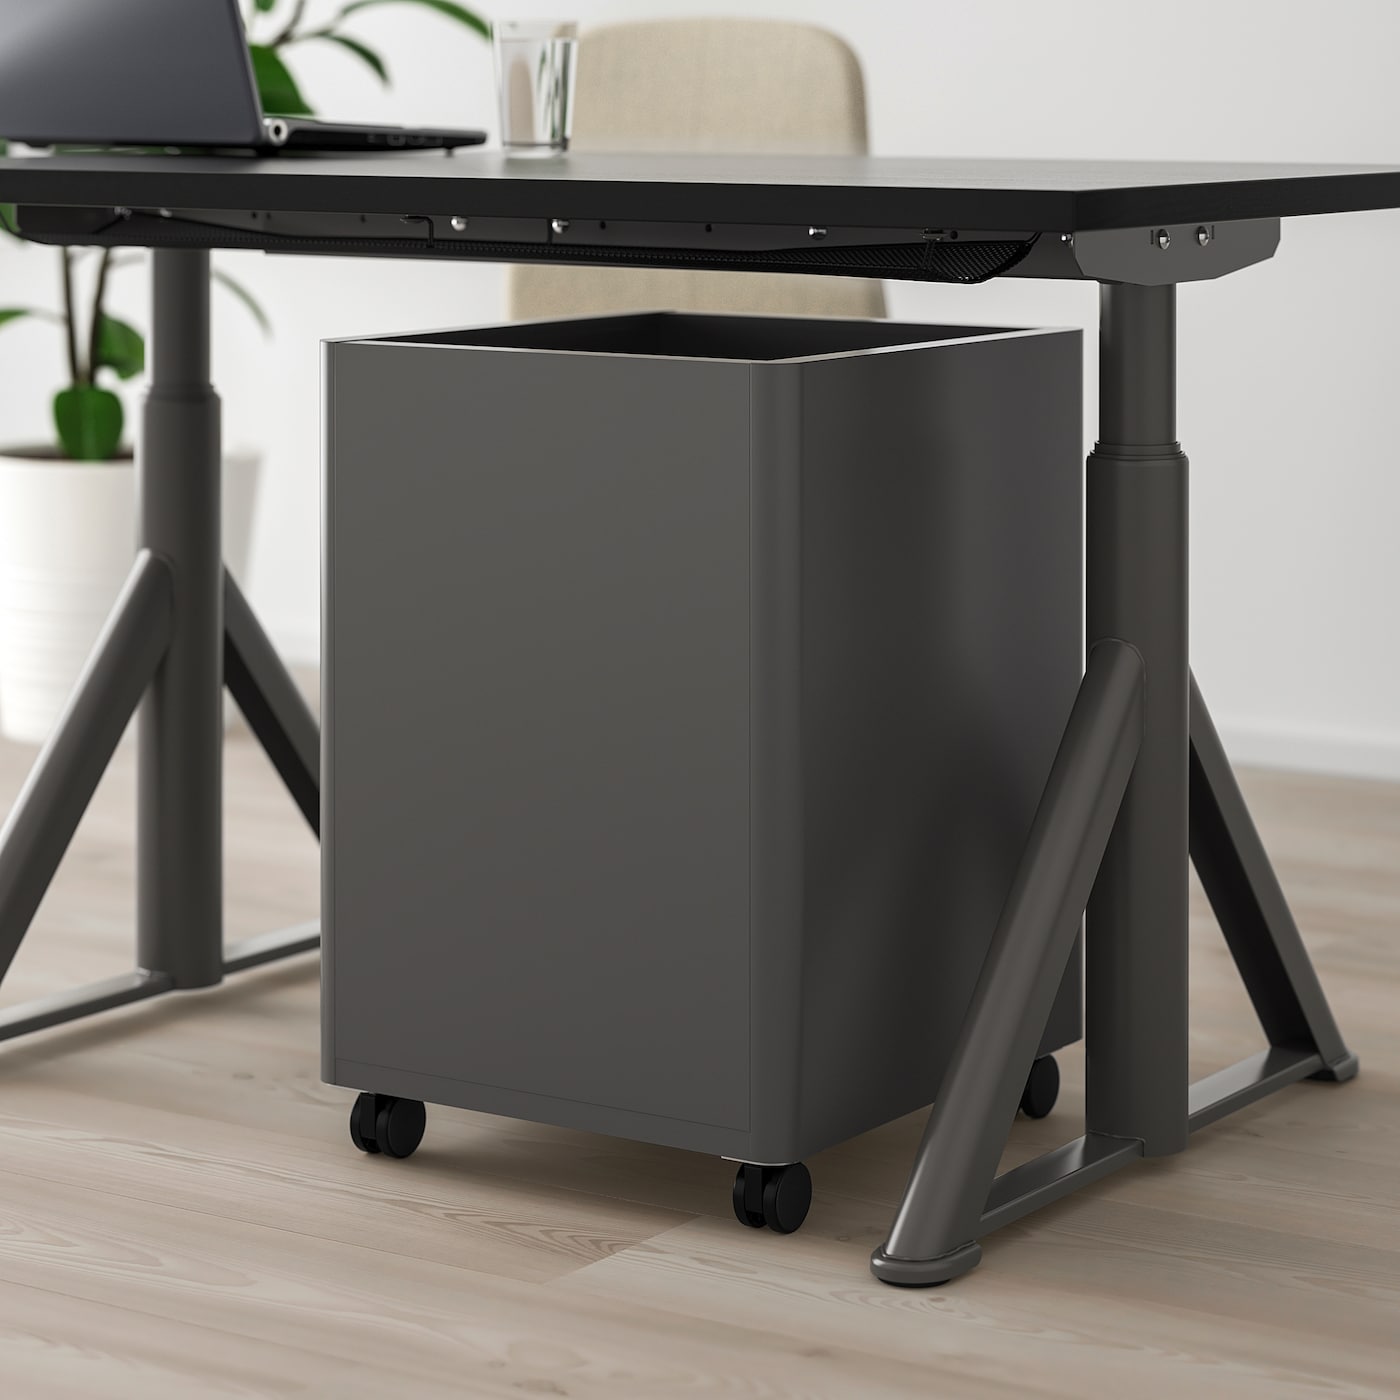 Ikea Idasen Desk: Functionality and Style Combined插图3